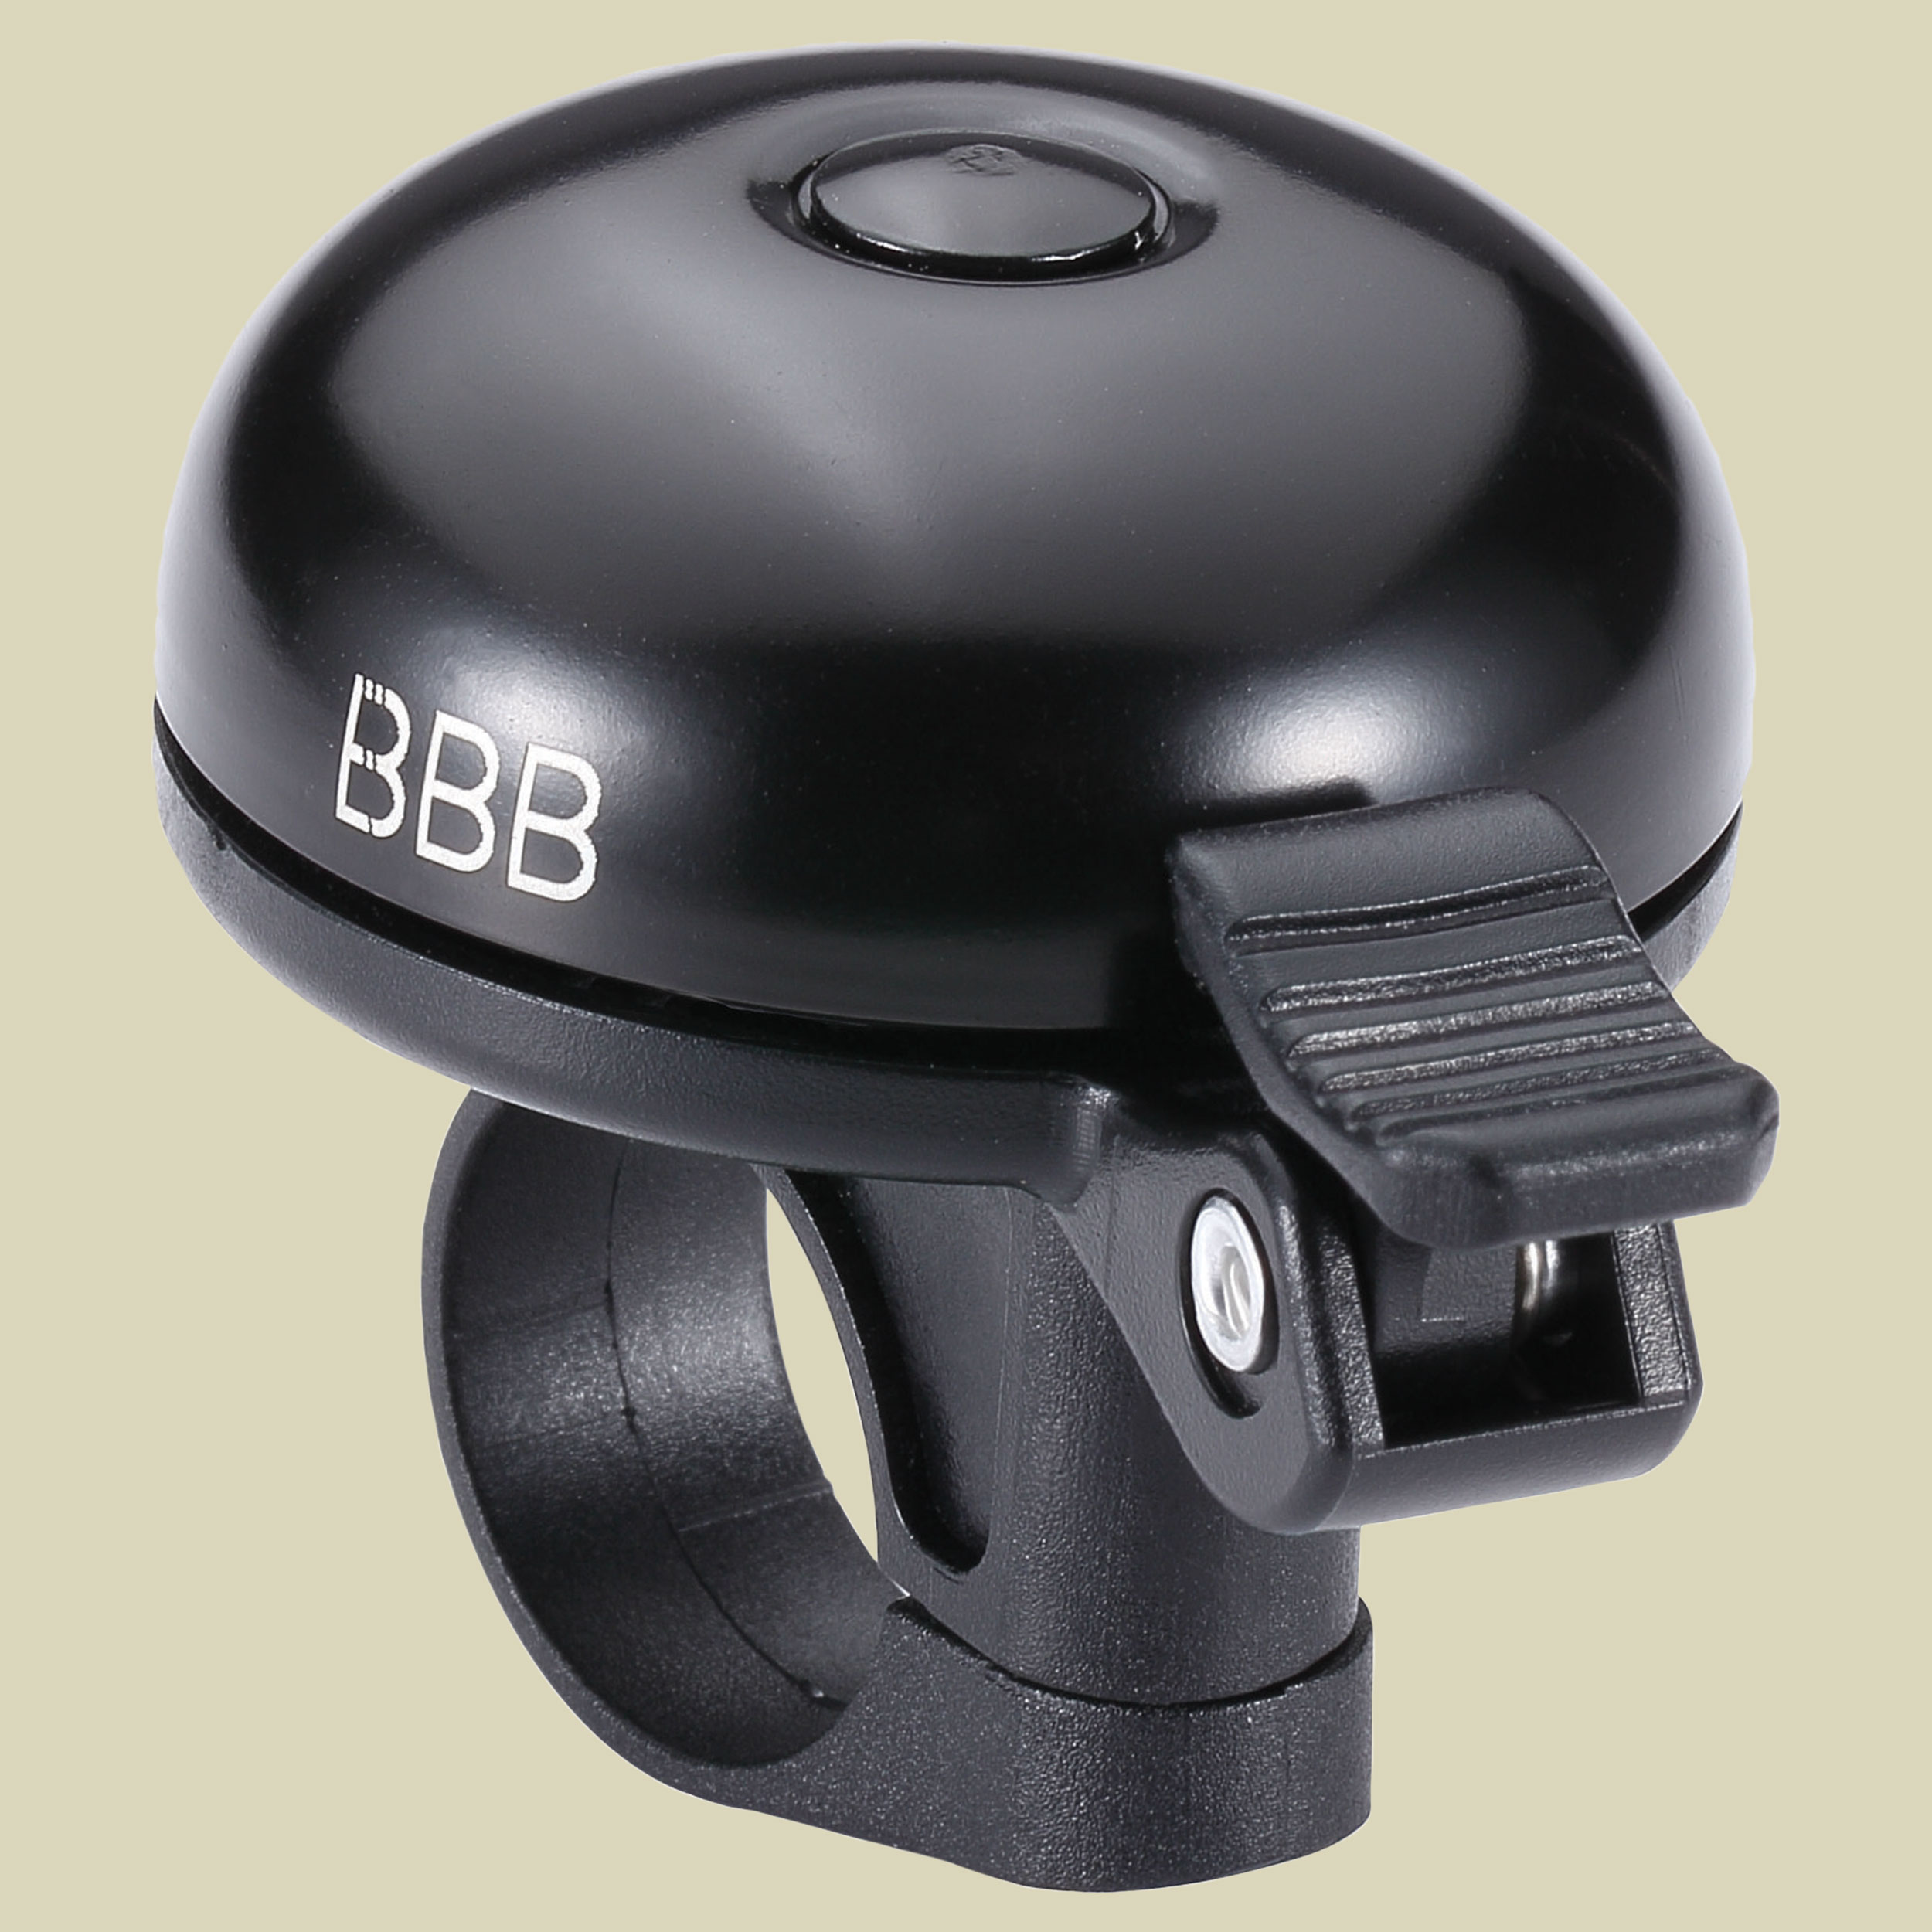 BBB-18 E Sound Fahrradklingel Farbe matt schwarz